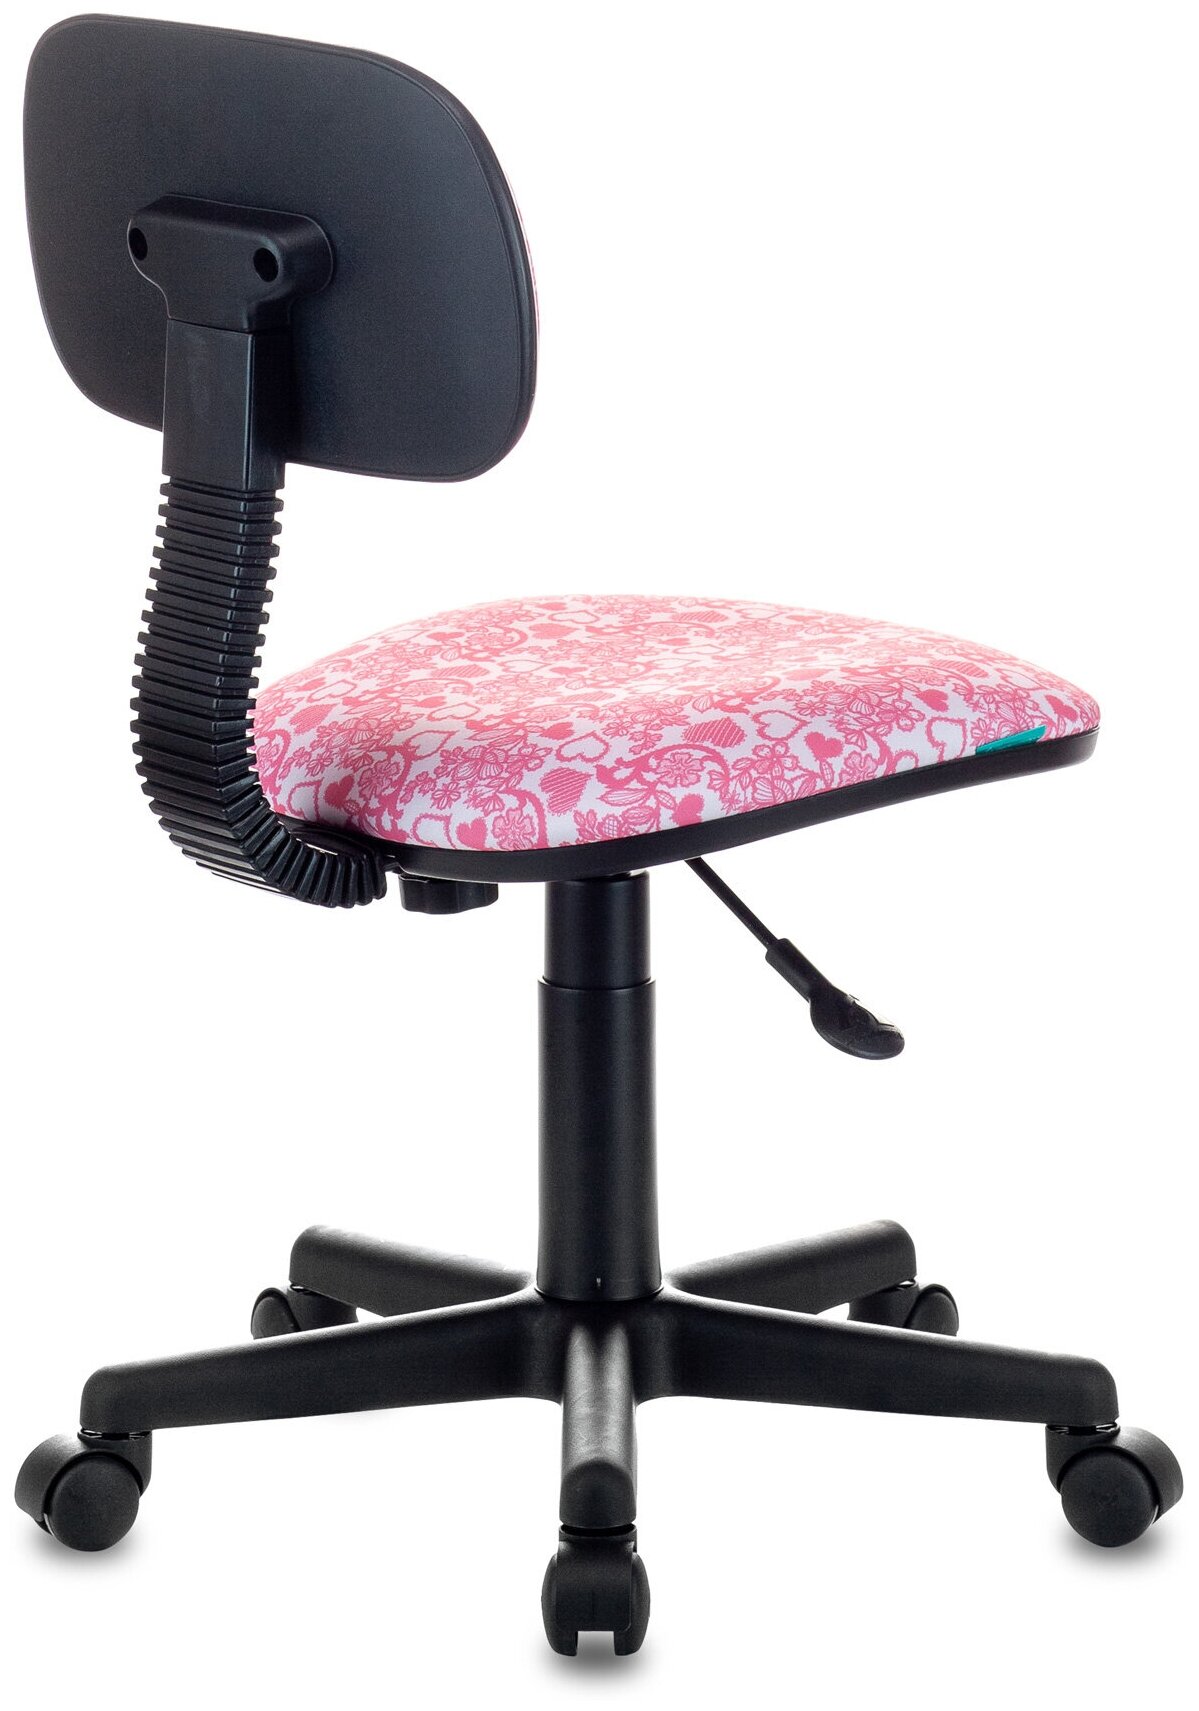 Кресло детское CH-201NX розовый сердца Hearts-Pk крестовина пластик / Компьютерное кресло для ребенка, школьника, подростка - фотография № 5